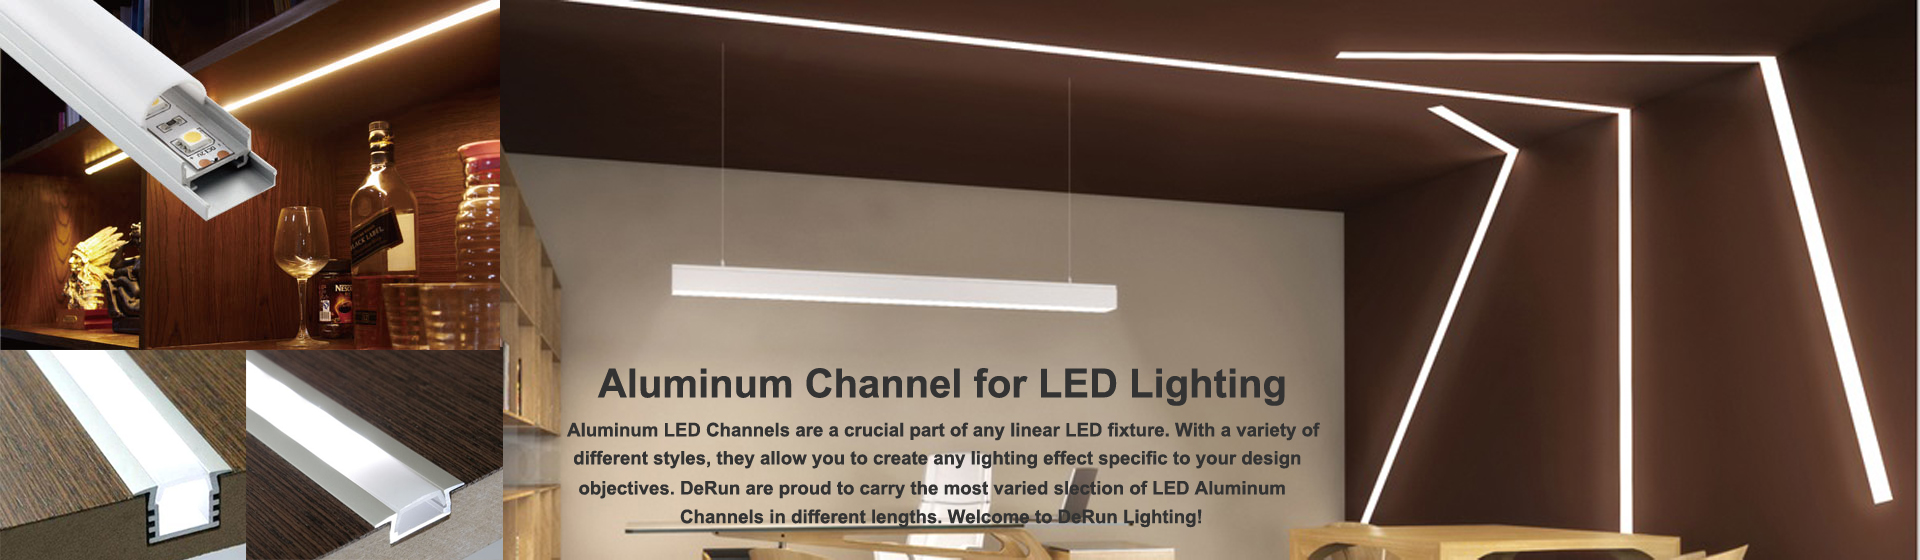 알루미늄 led 채널 - LED 선형 조명